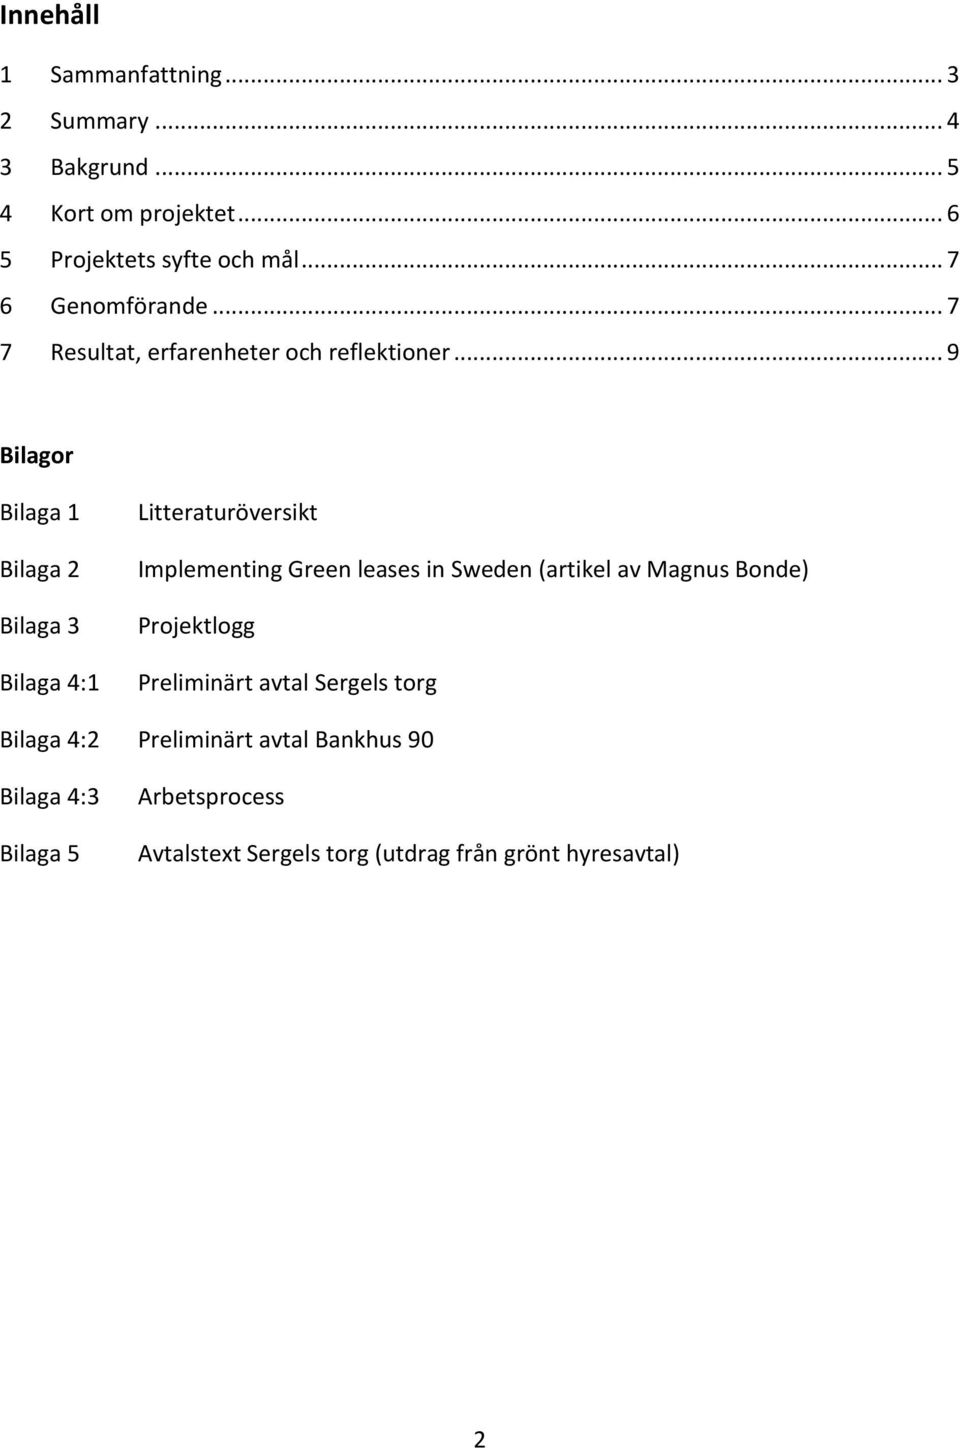 .. 9 Bilagor Bilaga 1 Bilaga 2 Bilaga 3 Bilaga 4:1 Litteraturöversikt Implementing Green leases in Sweden (artikel av